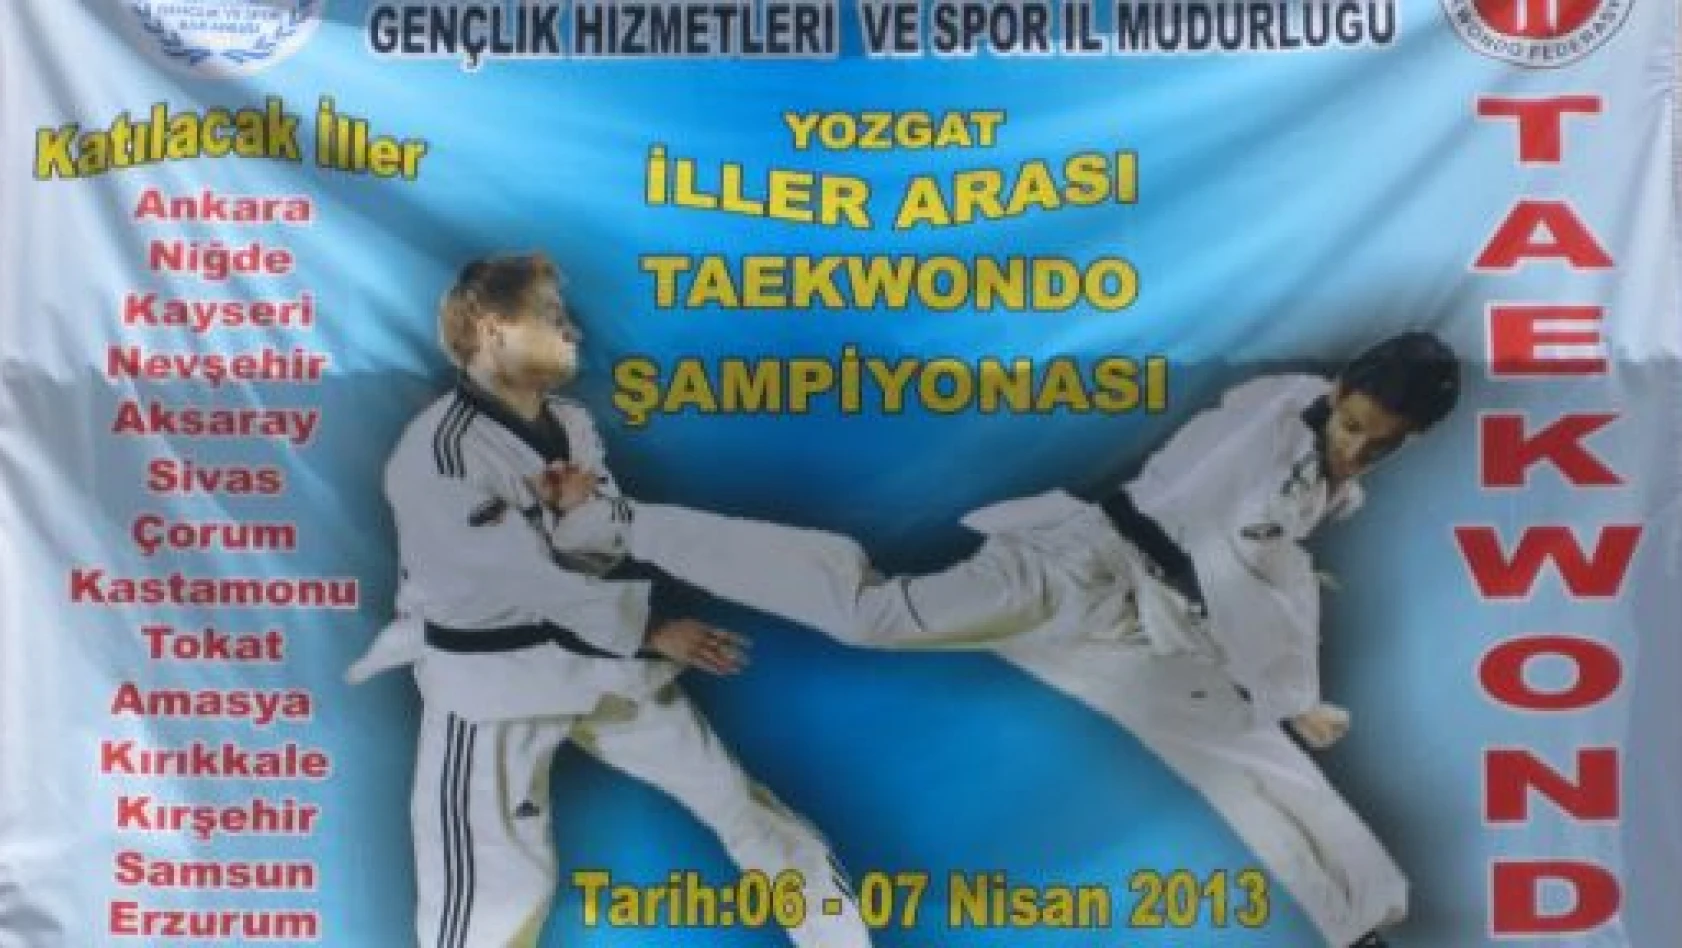 Yozgat İllerarası Taekwondo Şampiyonası Sona Erdi